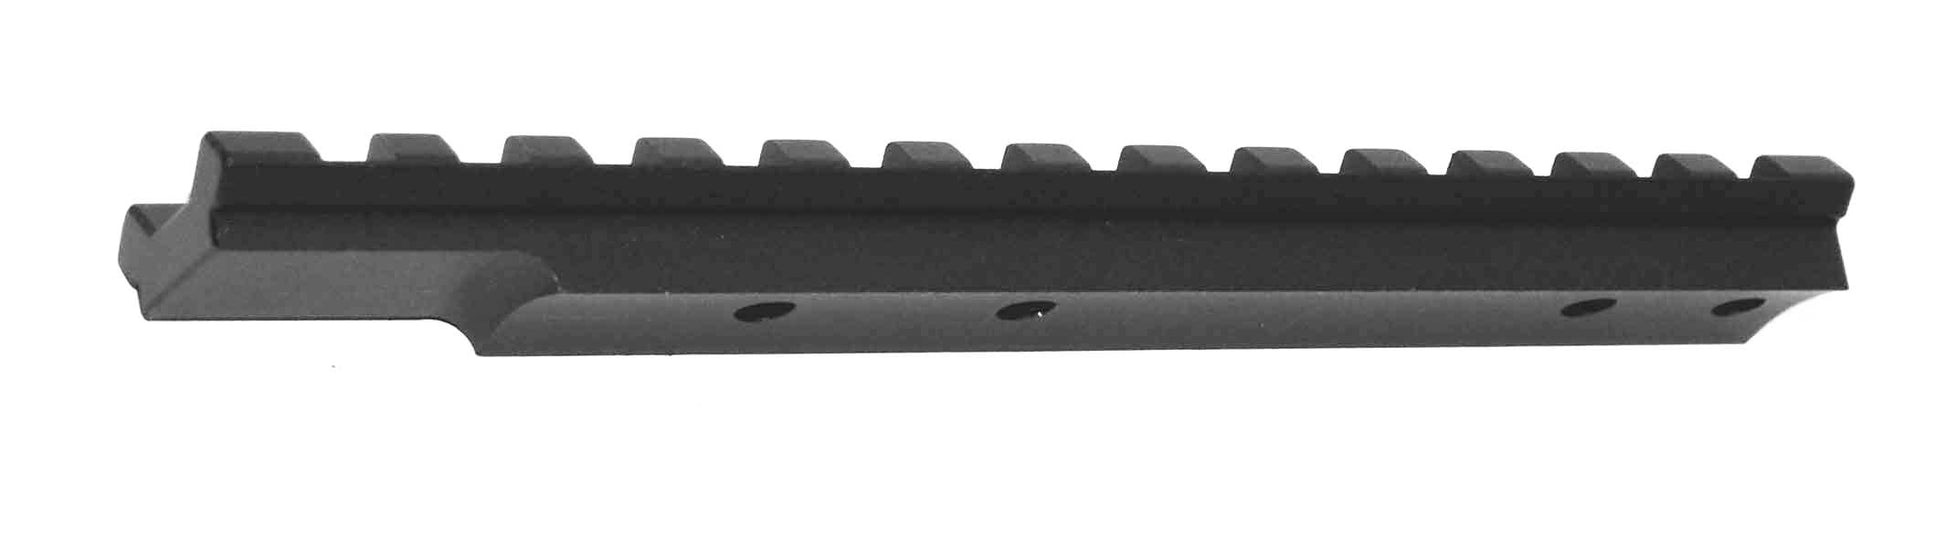 picatinny rail for stoeger m3500 shotgun.